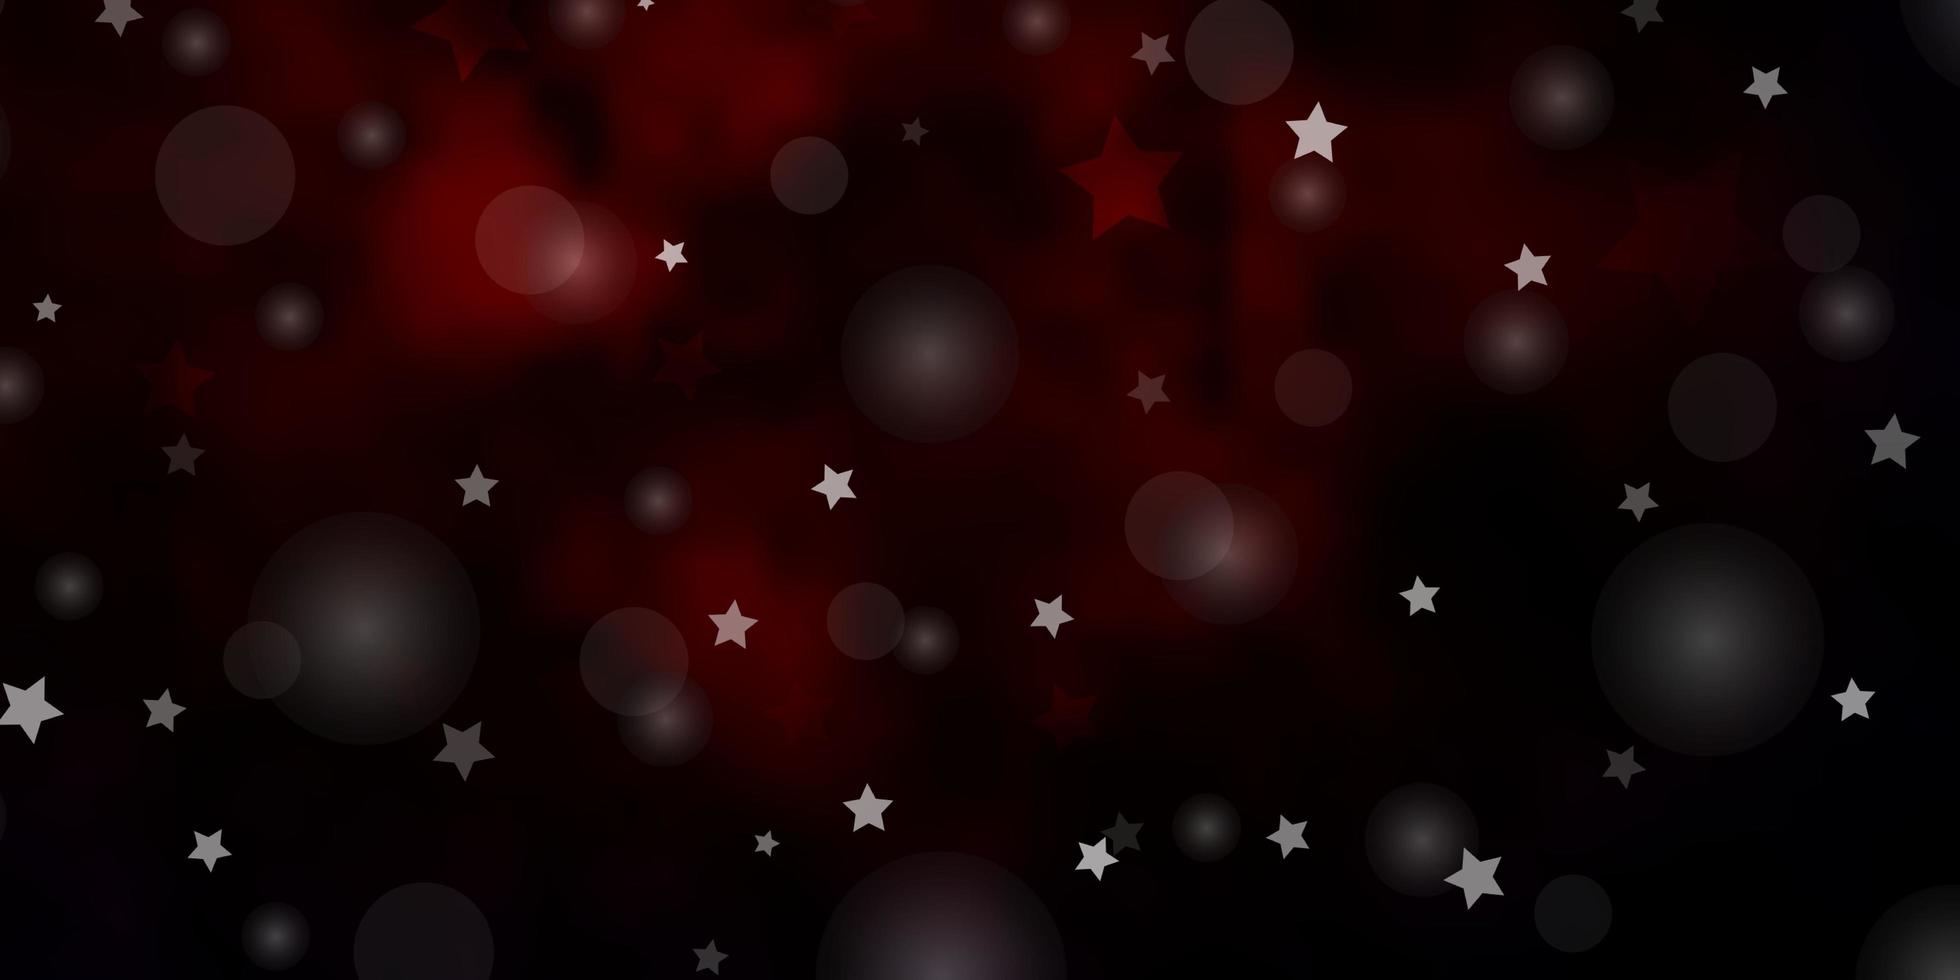 fundo vector vermelho escuro com círculos, estrelas. ilustração com conjunto de esferas abstratas coloridas, estrelas. textura para persianas, cortinas.